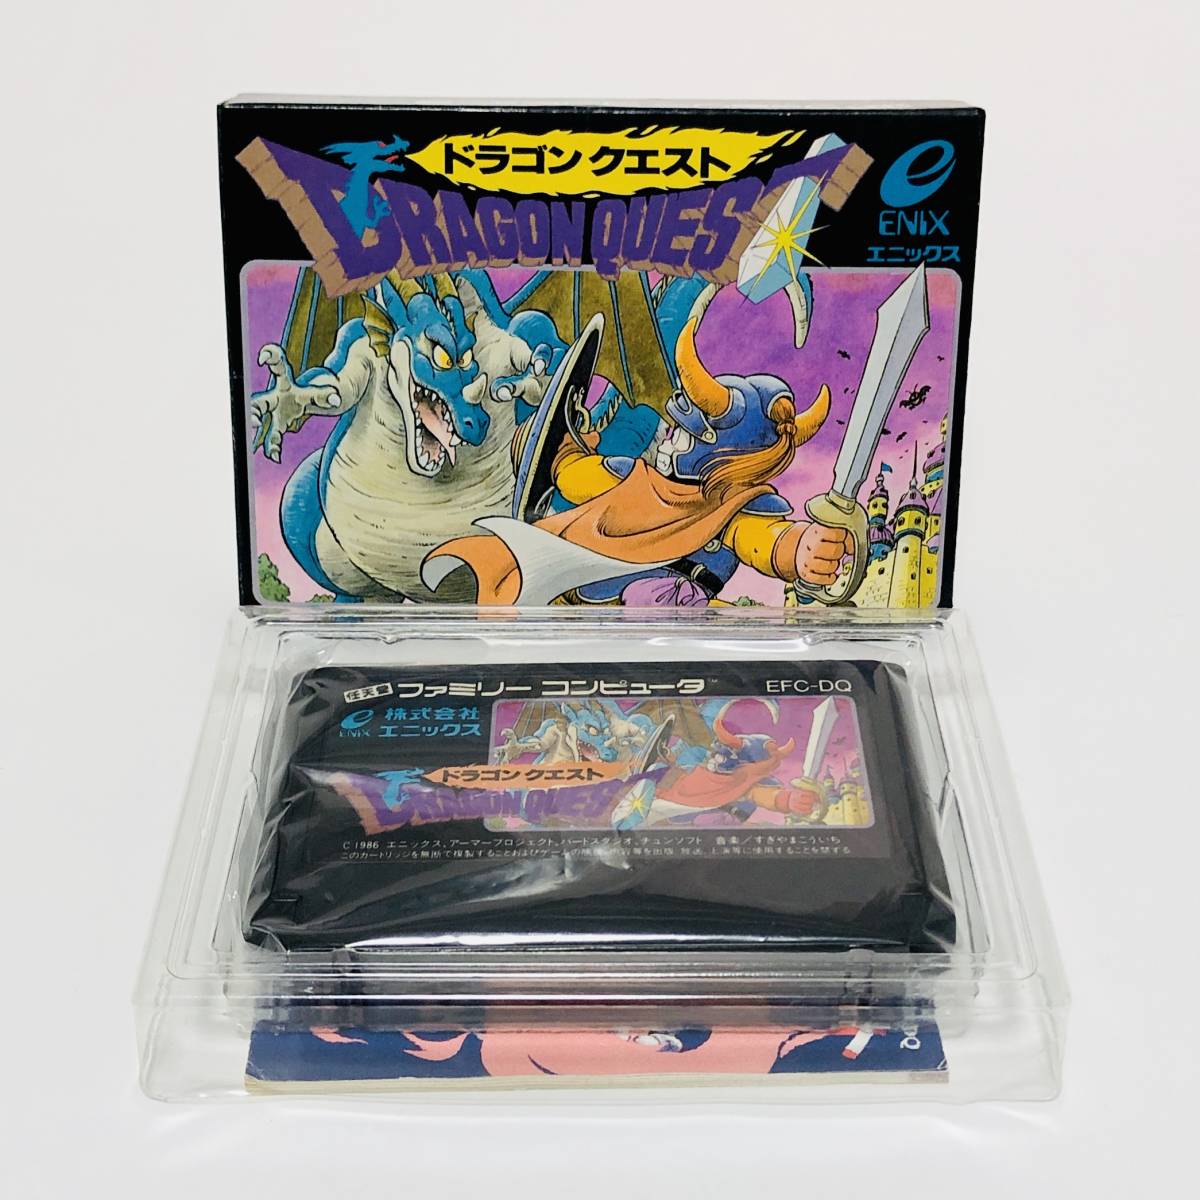 【送料無料】 ファミコン ドラゴンクエスト 箱説付き 痛みあり エニックス ドラクエ Nintendo Famicom Dragon Quest CIB Enix